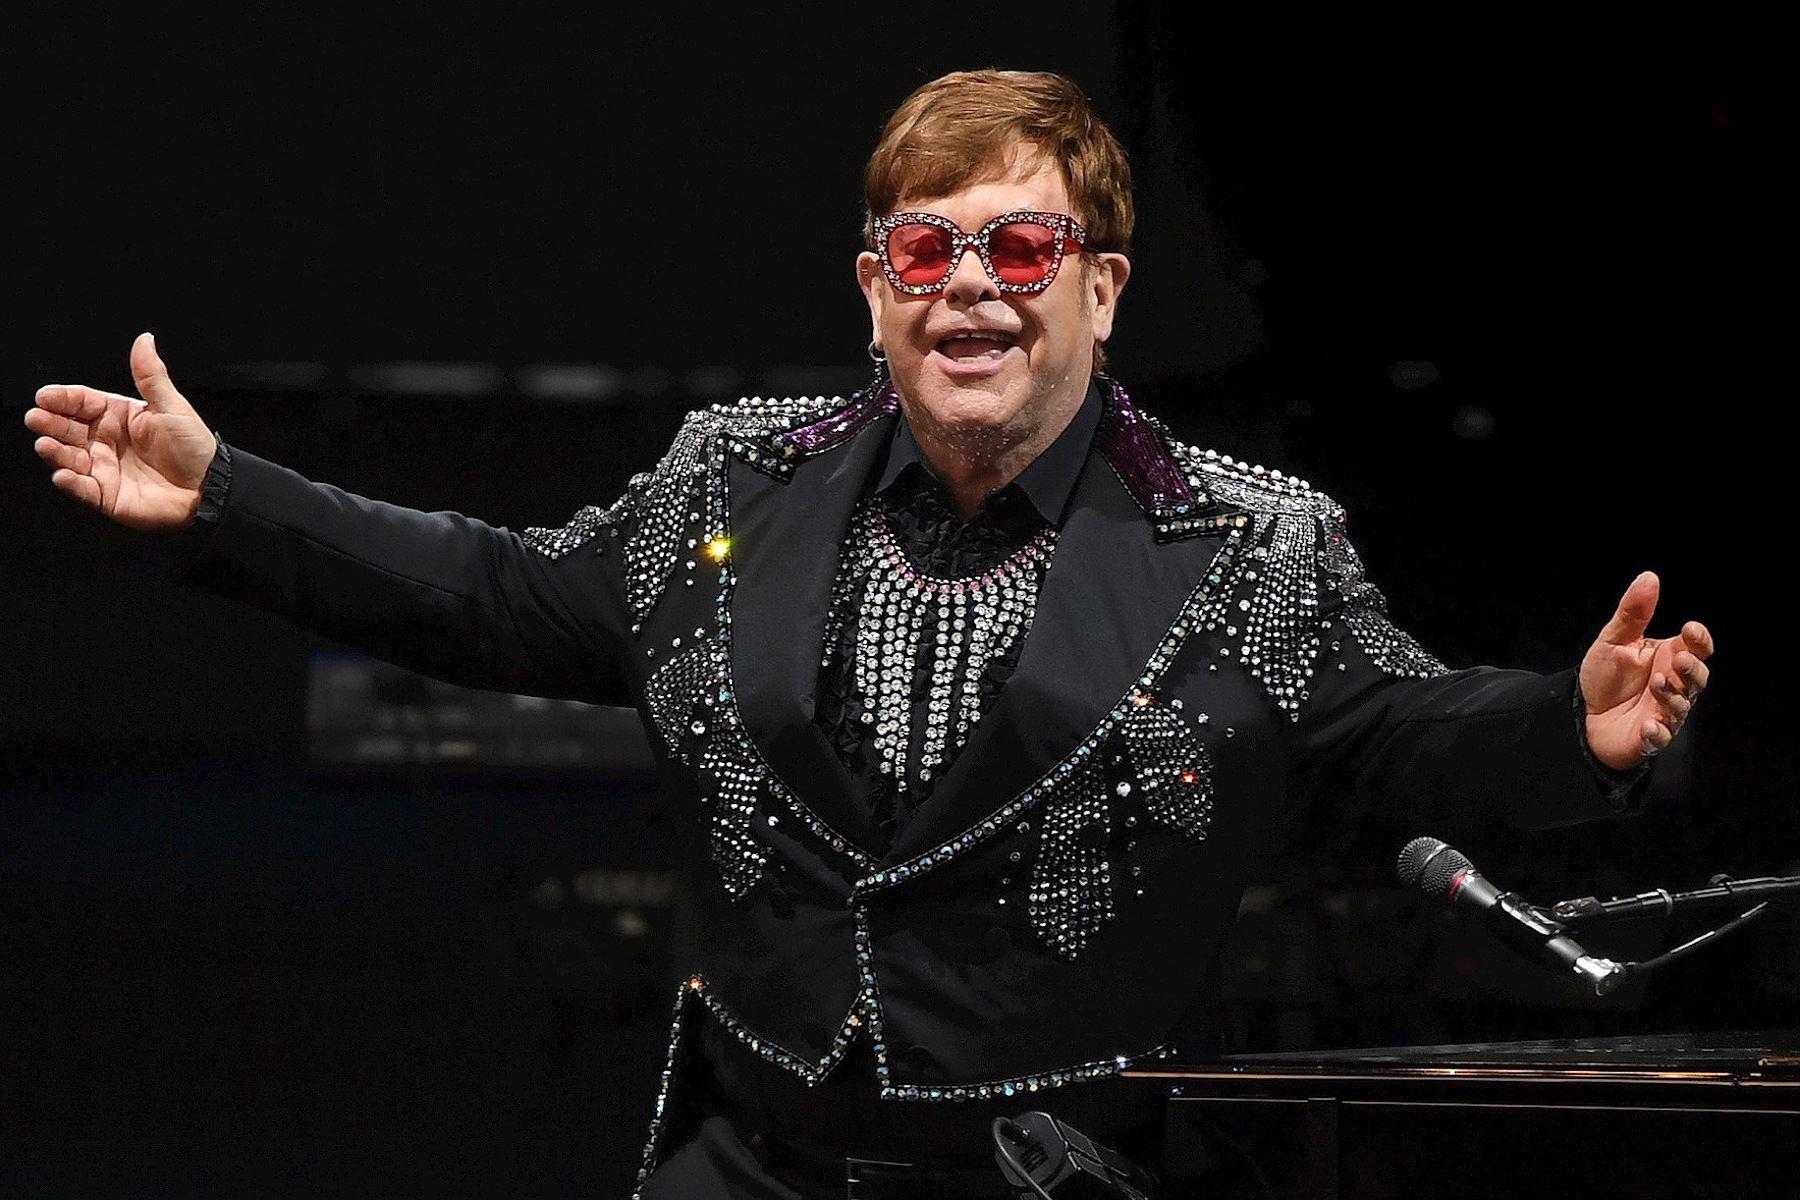 “Afortunadamente, Elton está completamente vacunado y reforzado, y sólo experimenta síntomas leves”, señalaron los representantes del artista.